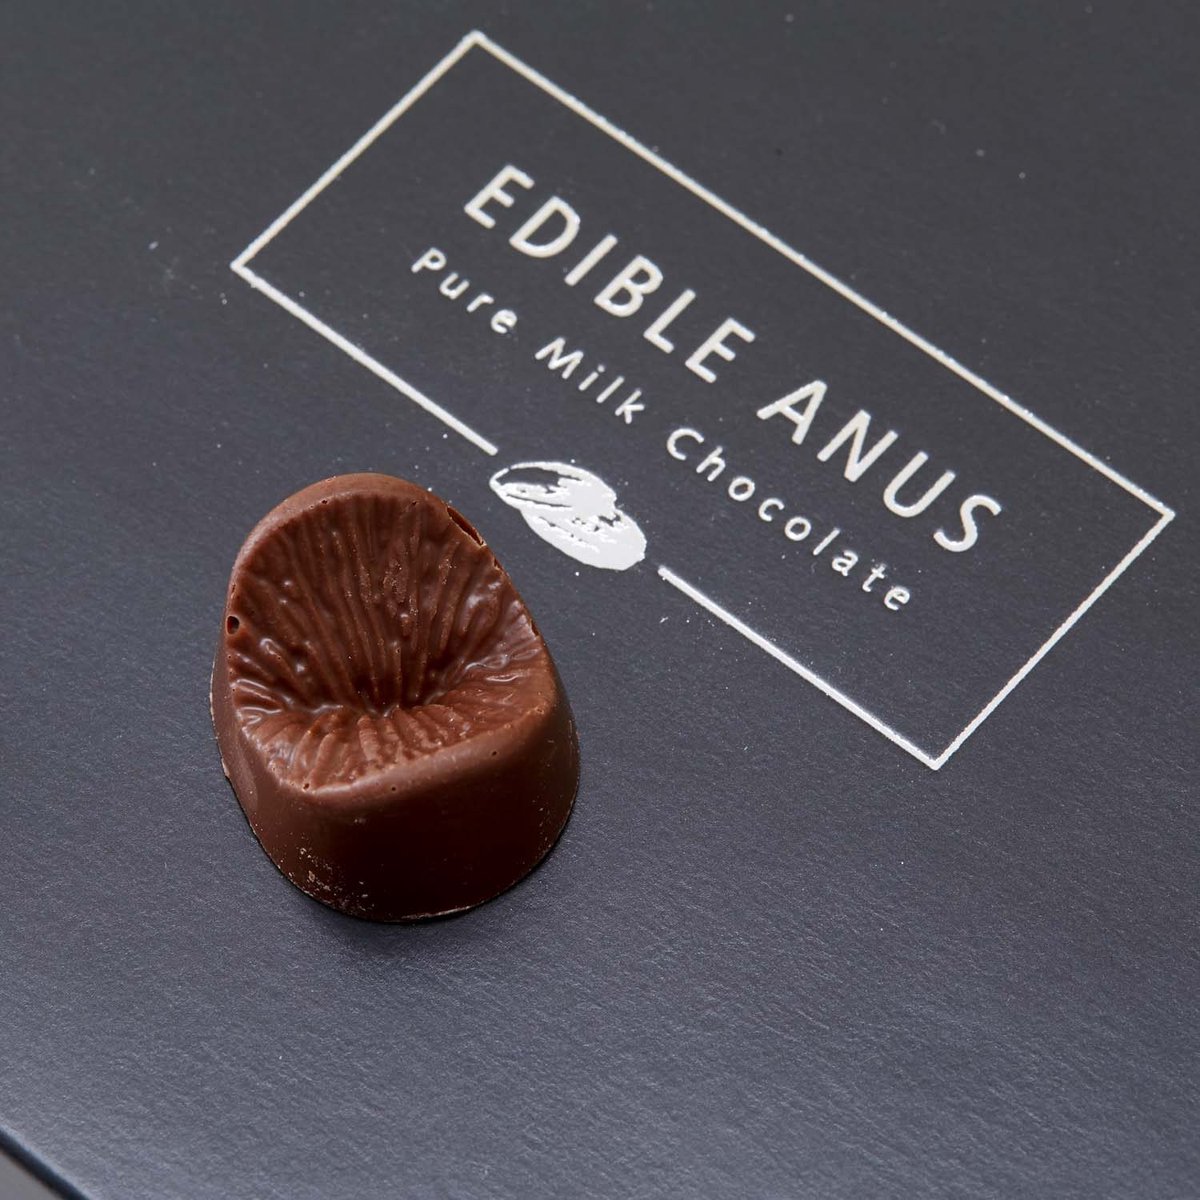 Des chocolats en forme d'anus à partager avec vos amis ou à garder pour  vous seul (gourmand !)